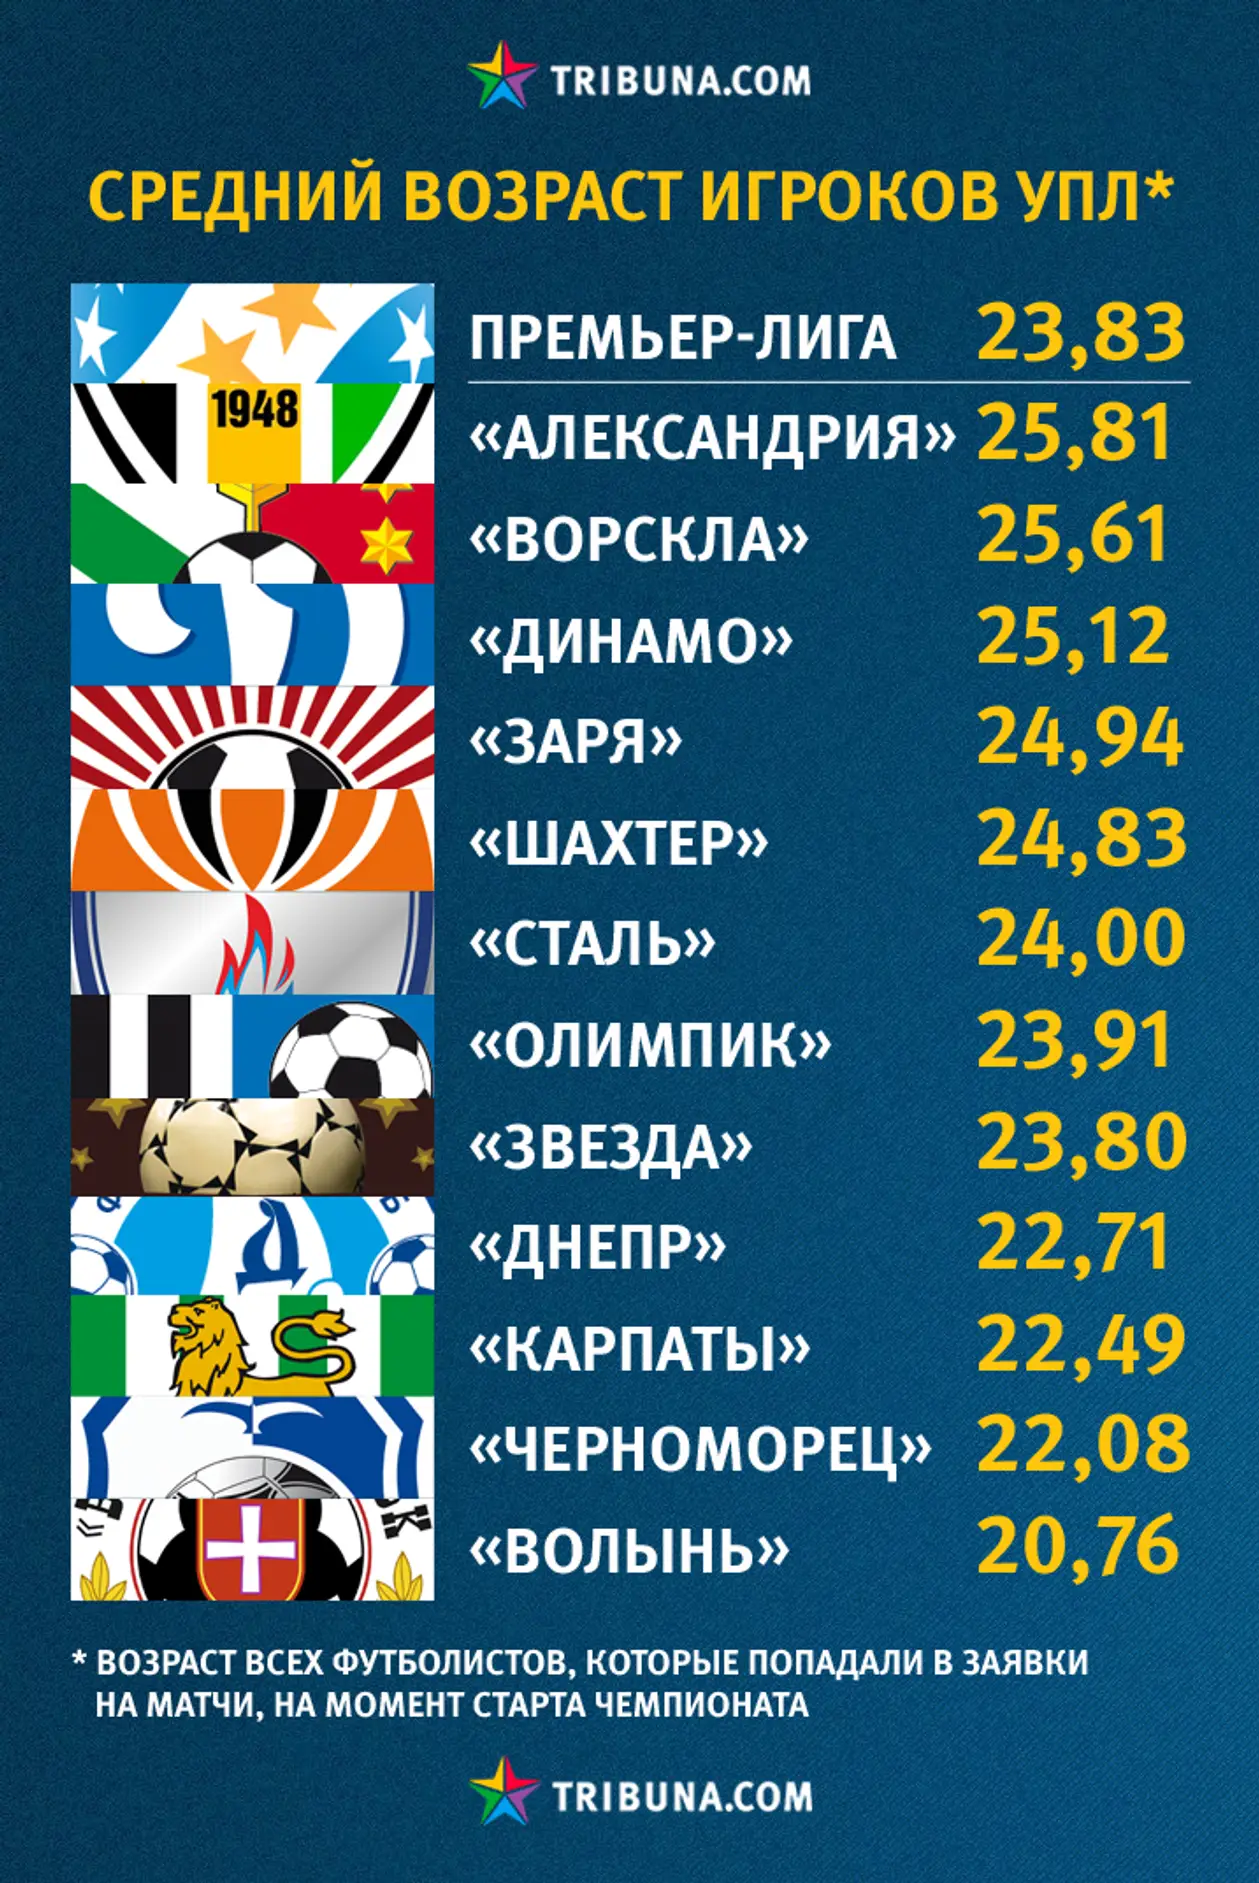 Средний возраст игроков клубов УПЛ. Инфографика Tribuna.com